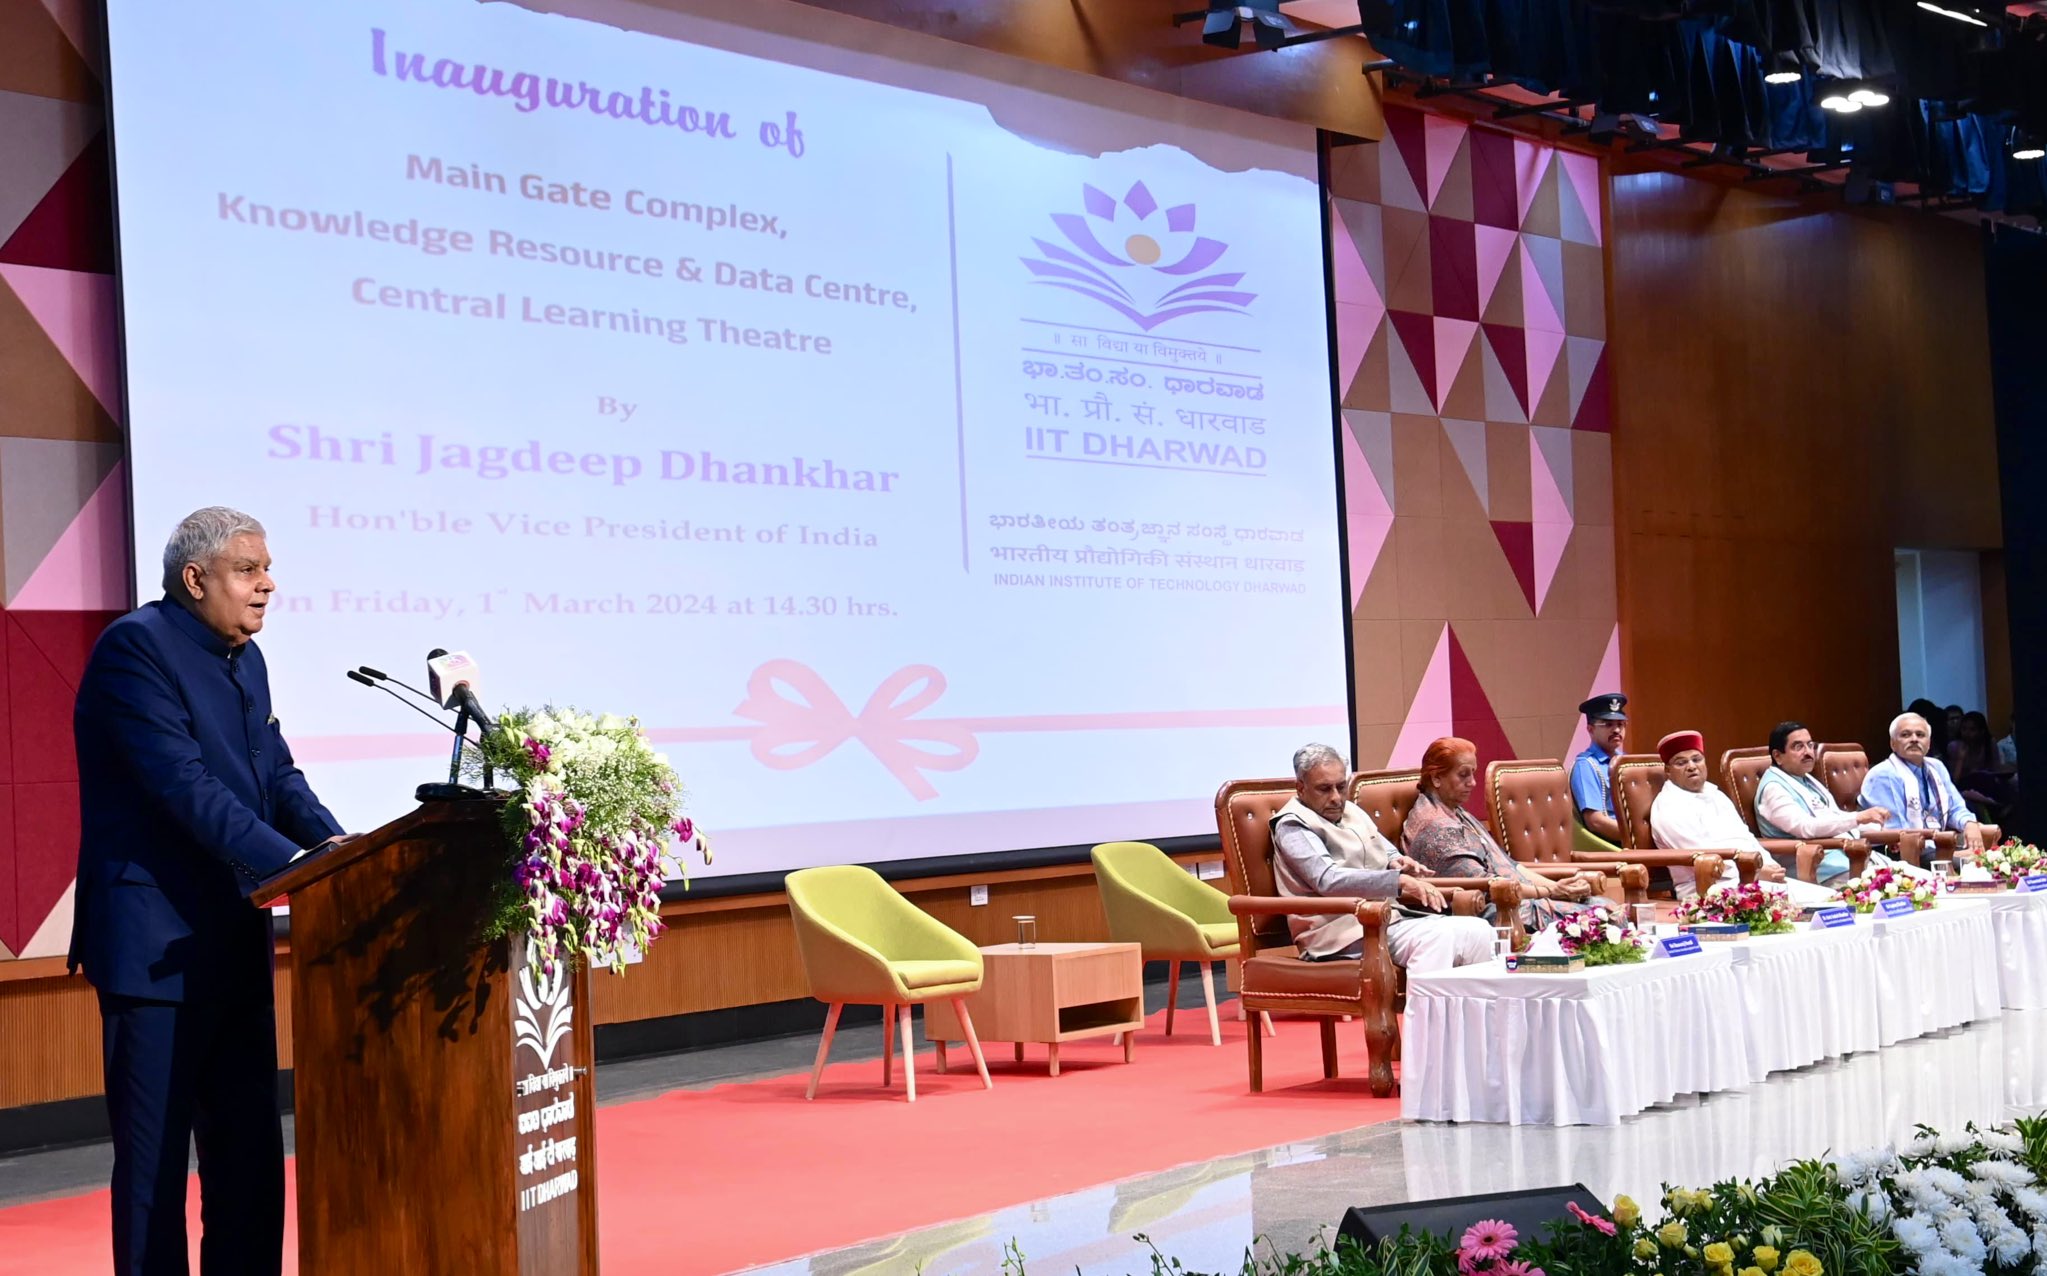 1 मार्च 2024 को आईआईटी धारवाड, कर्नाटक के संकाय सदस्यों एवं छात्रों को संबोधित करते हुए उपराष्ट्रपति श्री जगदीप धनखड़।